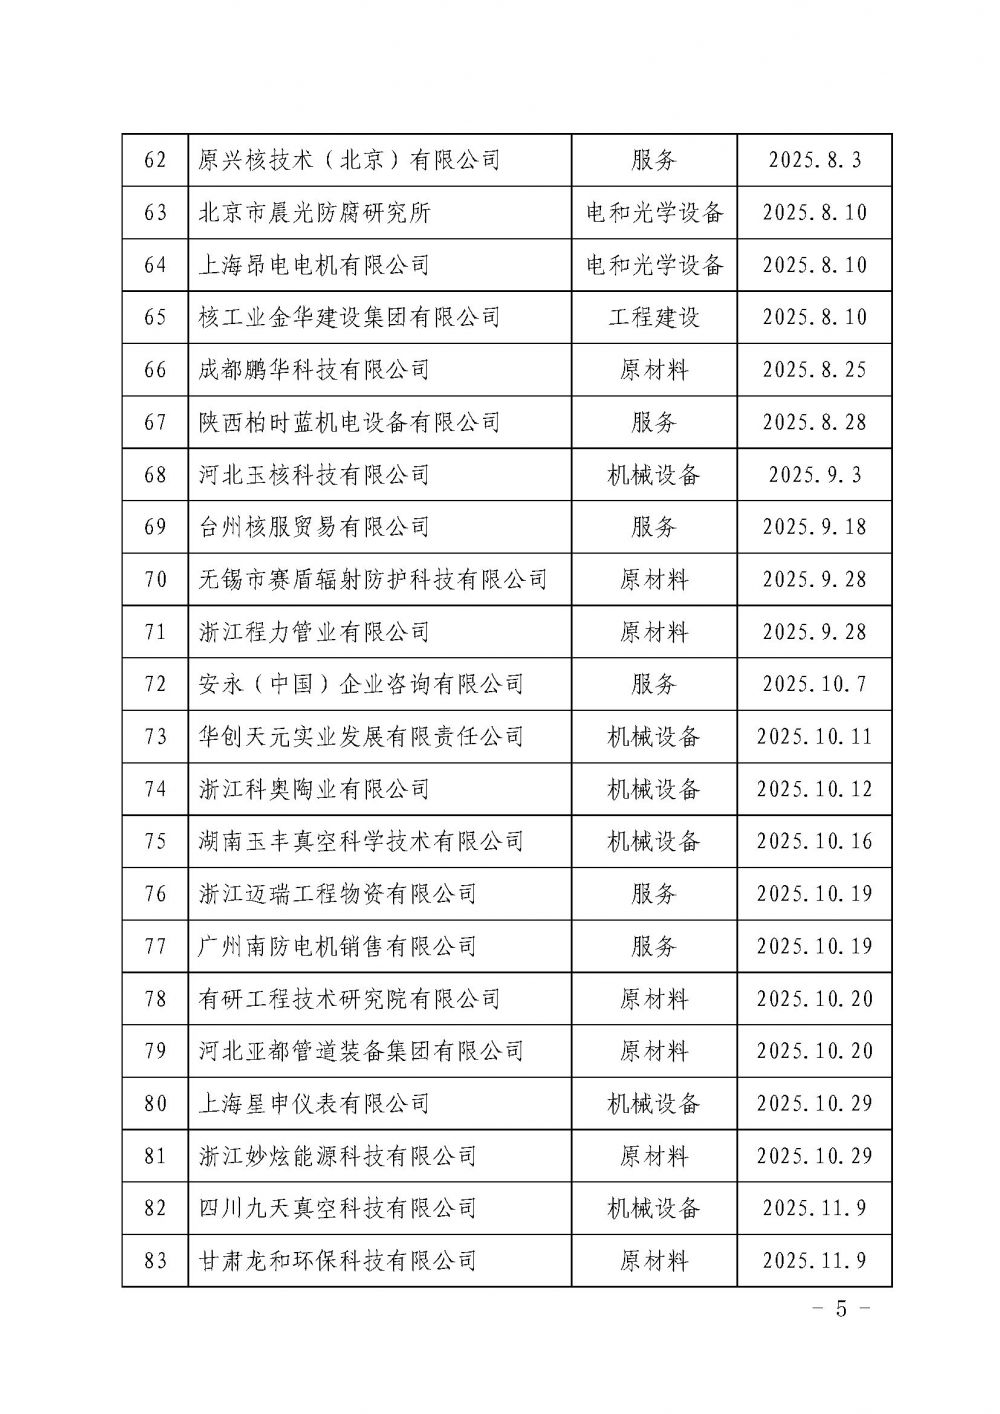 中国核能行业协会关于发布第十九批核能行业合格供应商名录的公告_页面_5.jpg